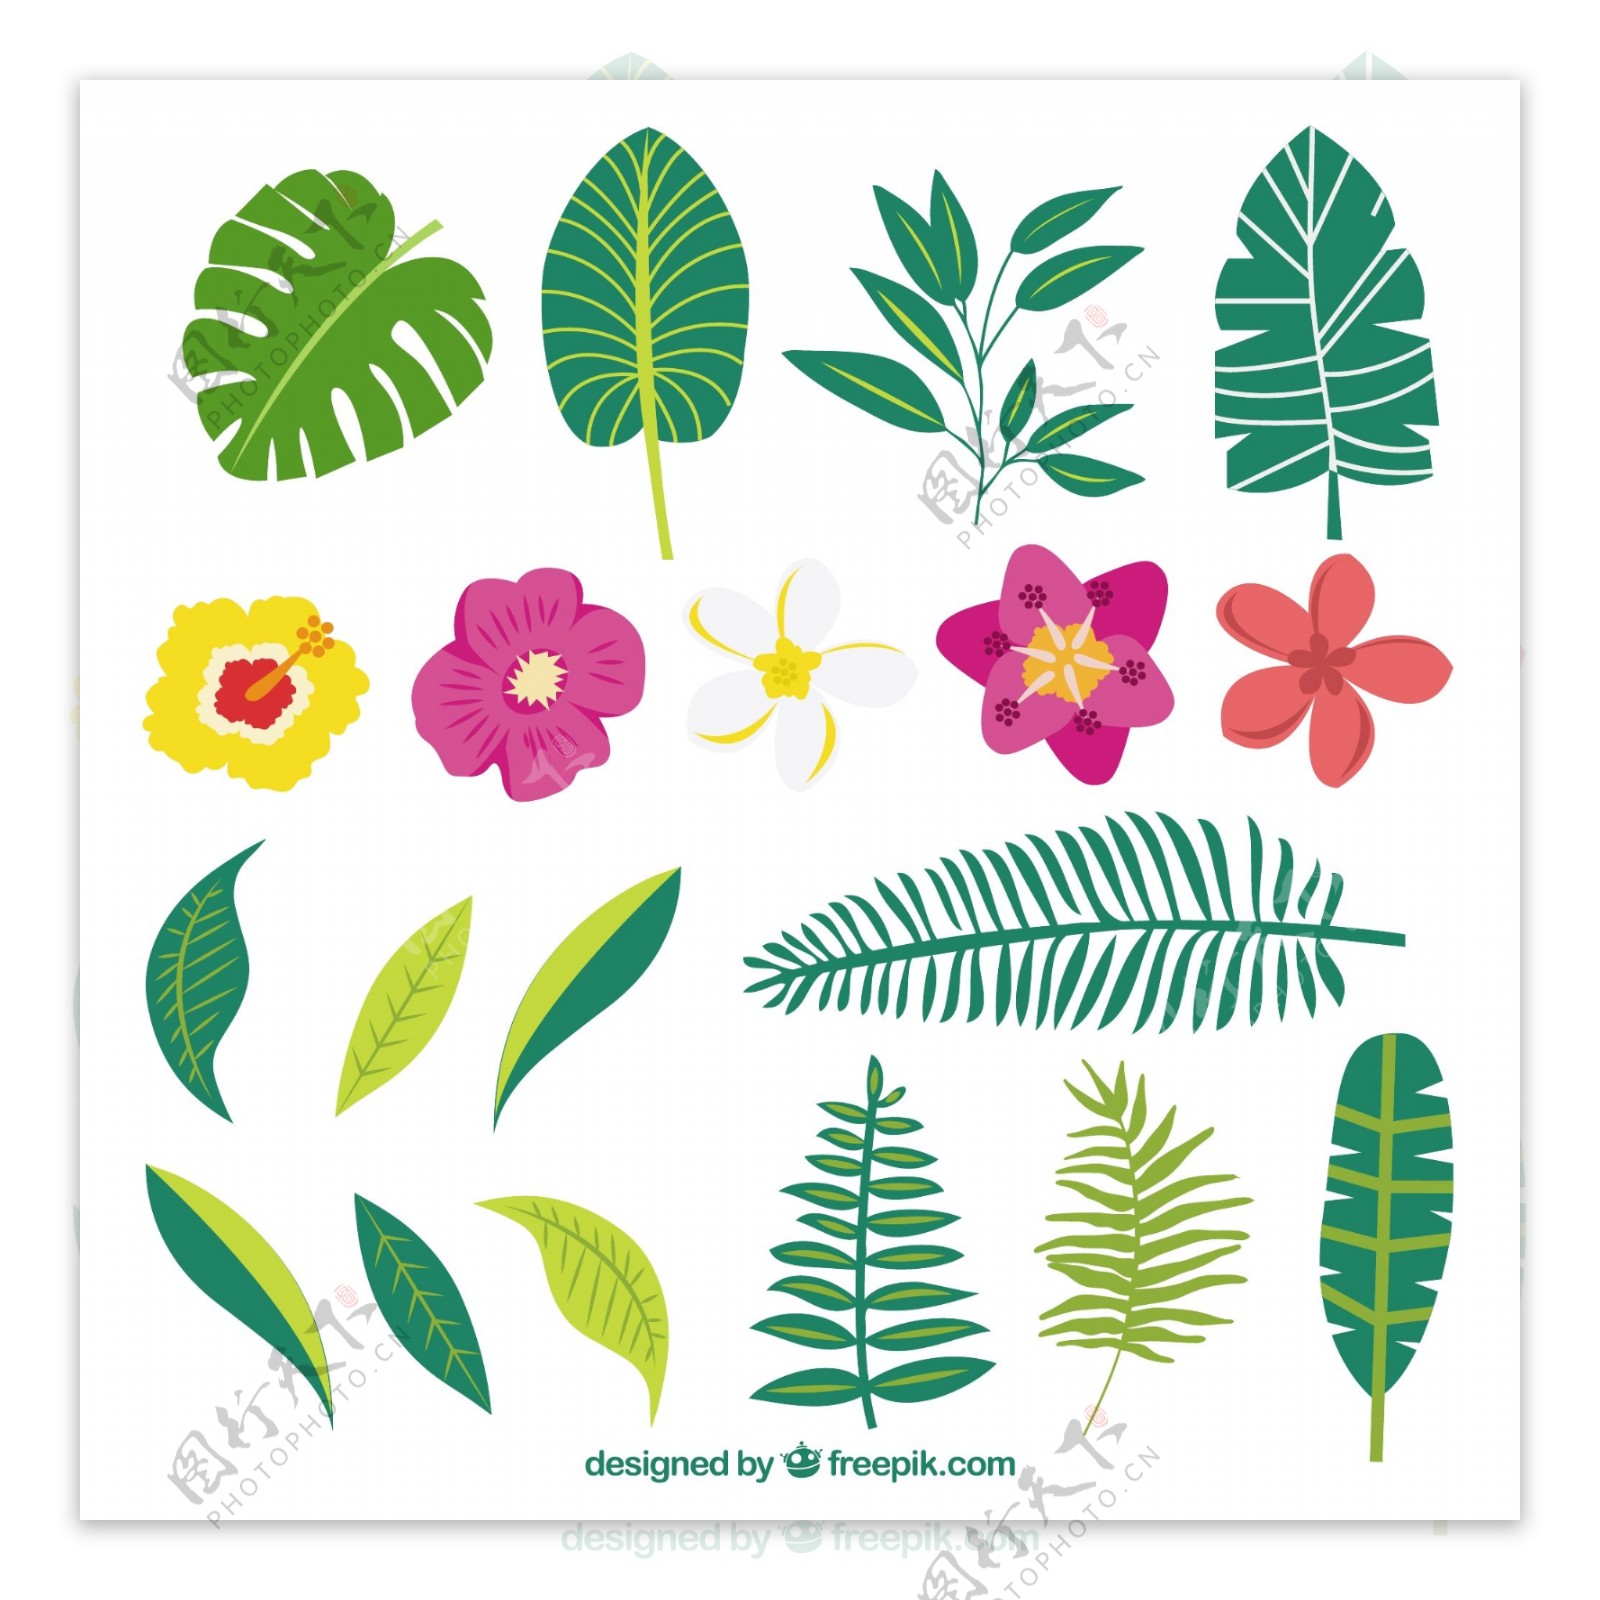 手工绘制的各种植物和奇花